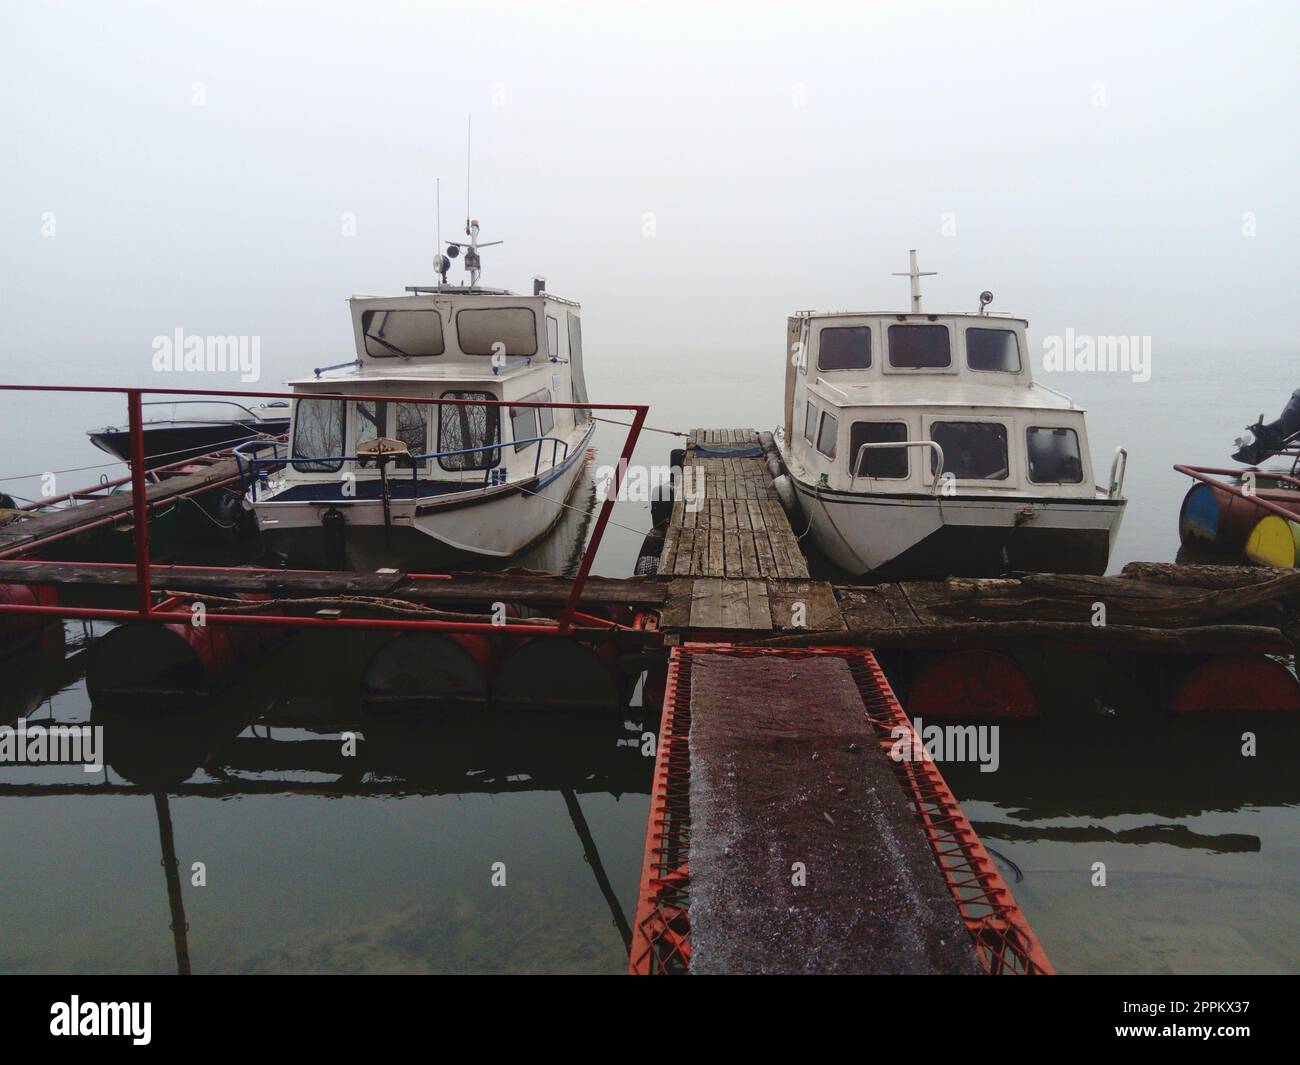 Belgrado, Serbia, 14 gennaio 2020 due barche bianche in un molo di legno, partirono per l'inverno. Il tempo è disgustoso nell'Europa meridionale. Gennaio giorno nuvoloso. Riflesso del trasporto d'acqua in un fiume Foto Stock